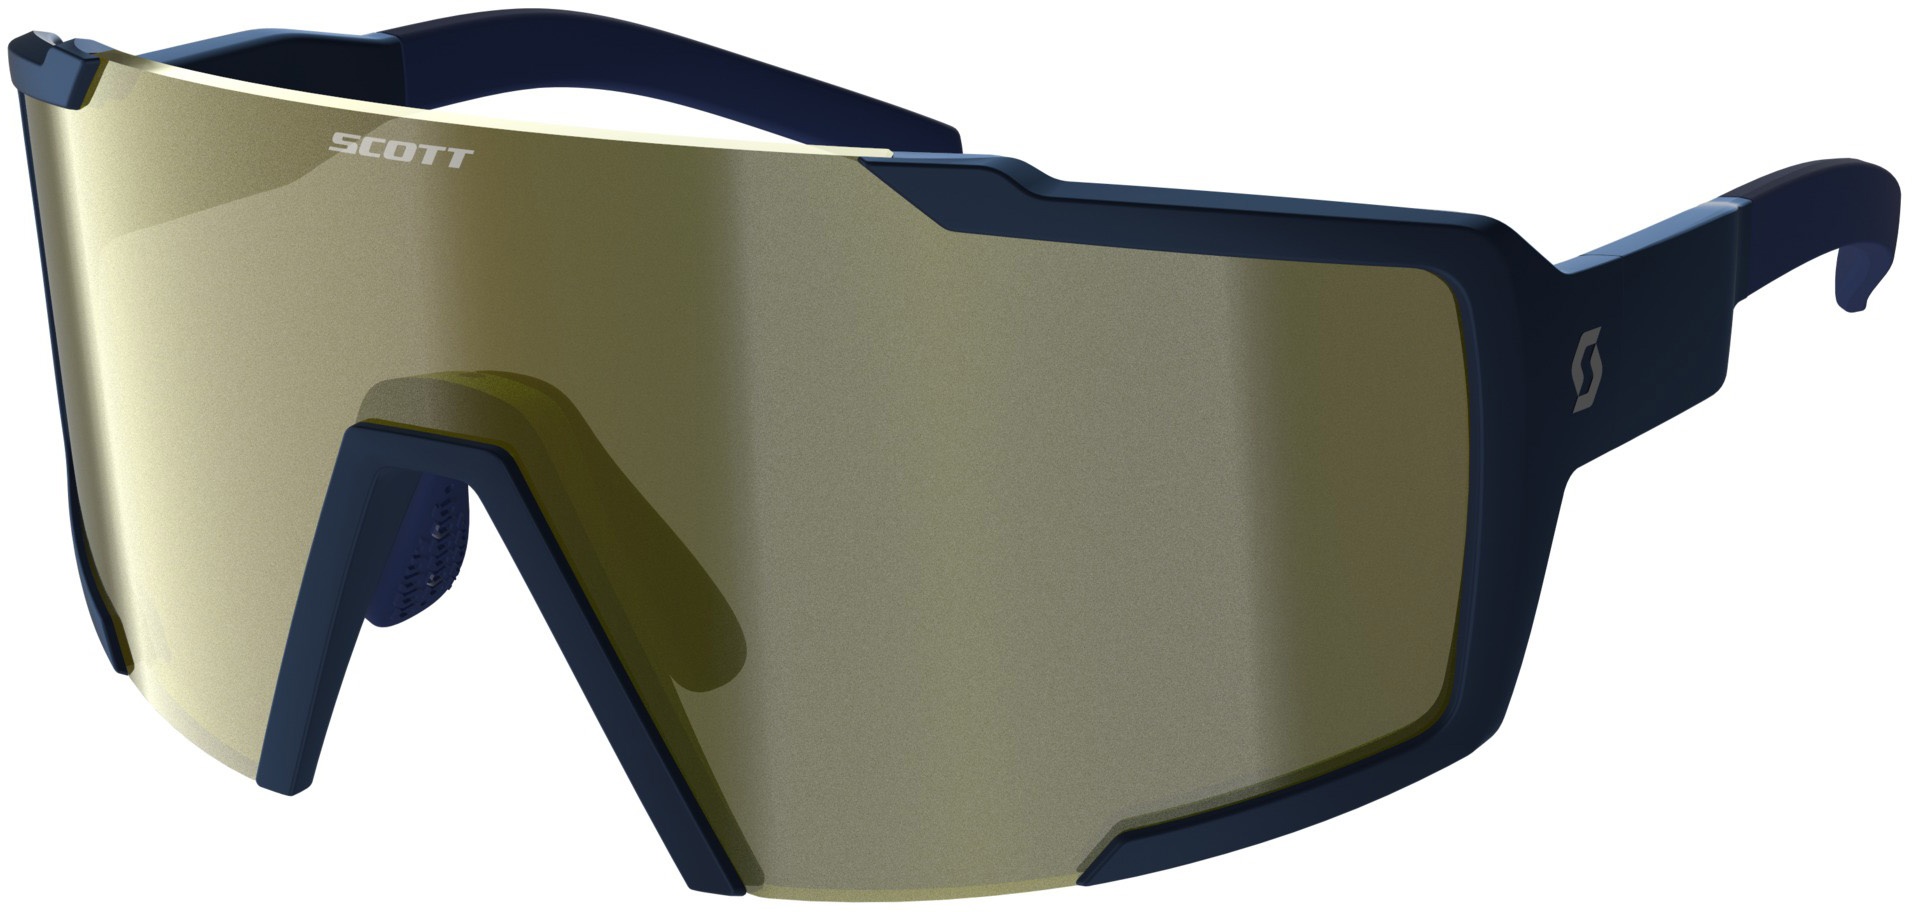 Scott Shield Compact Cykelbrille - Blå